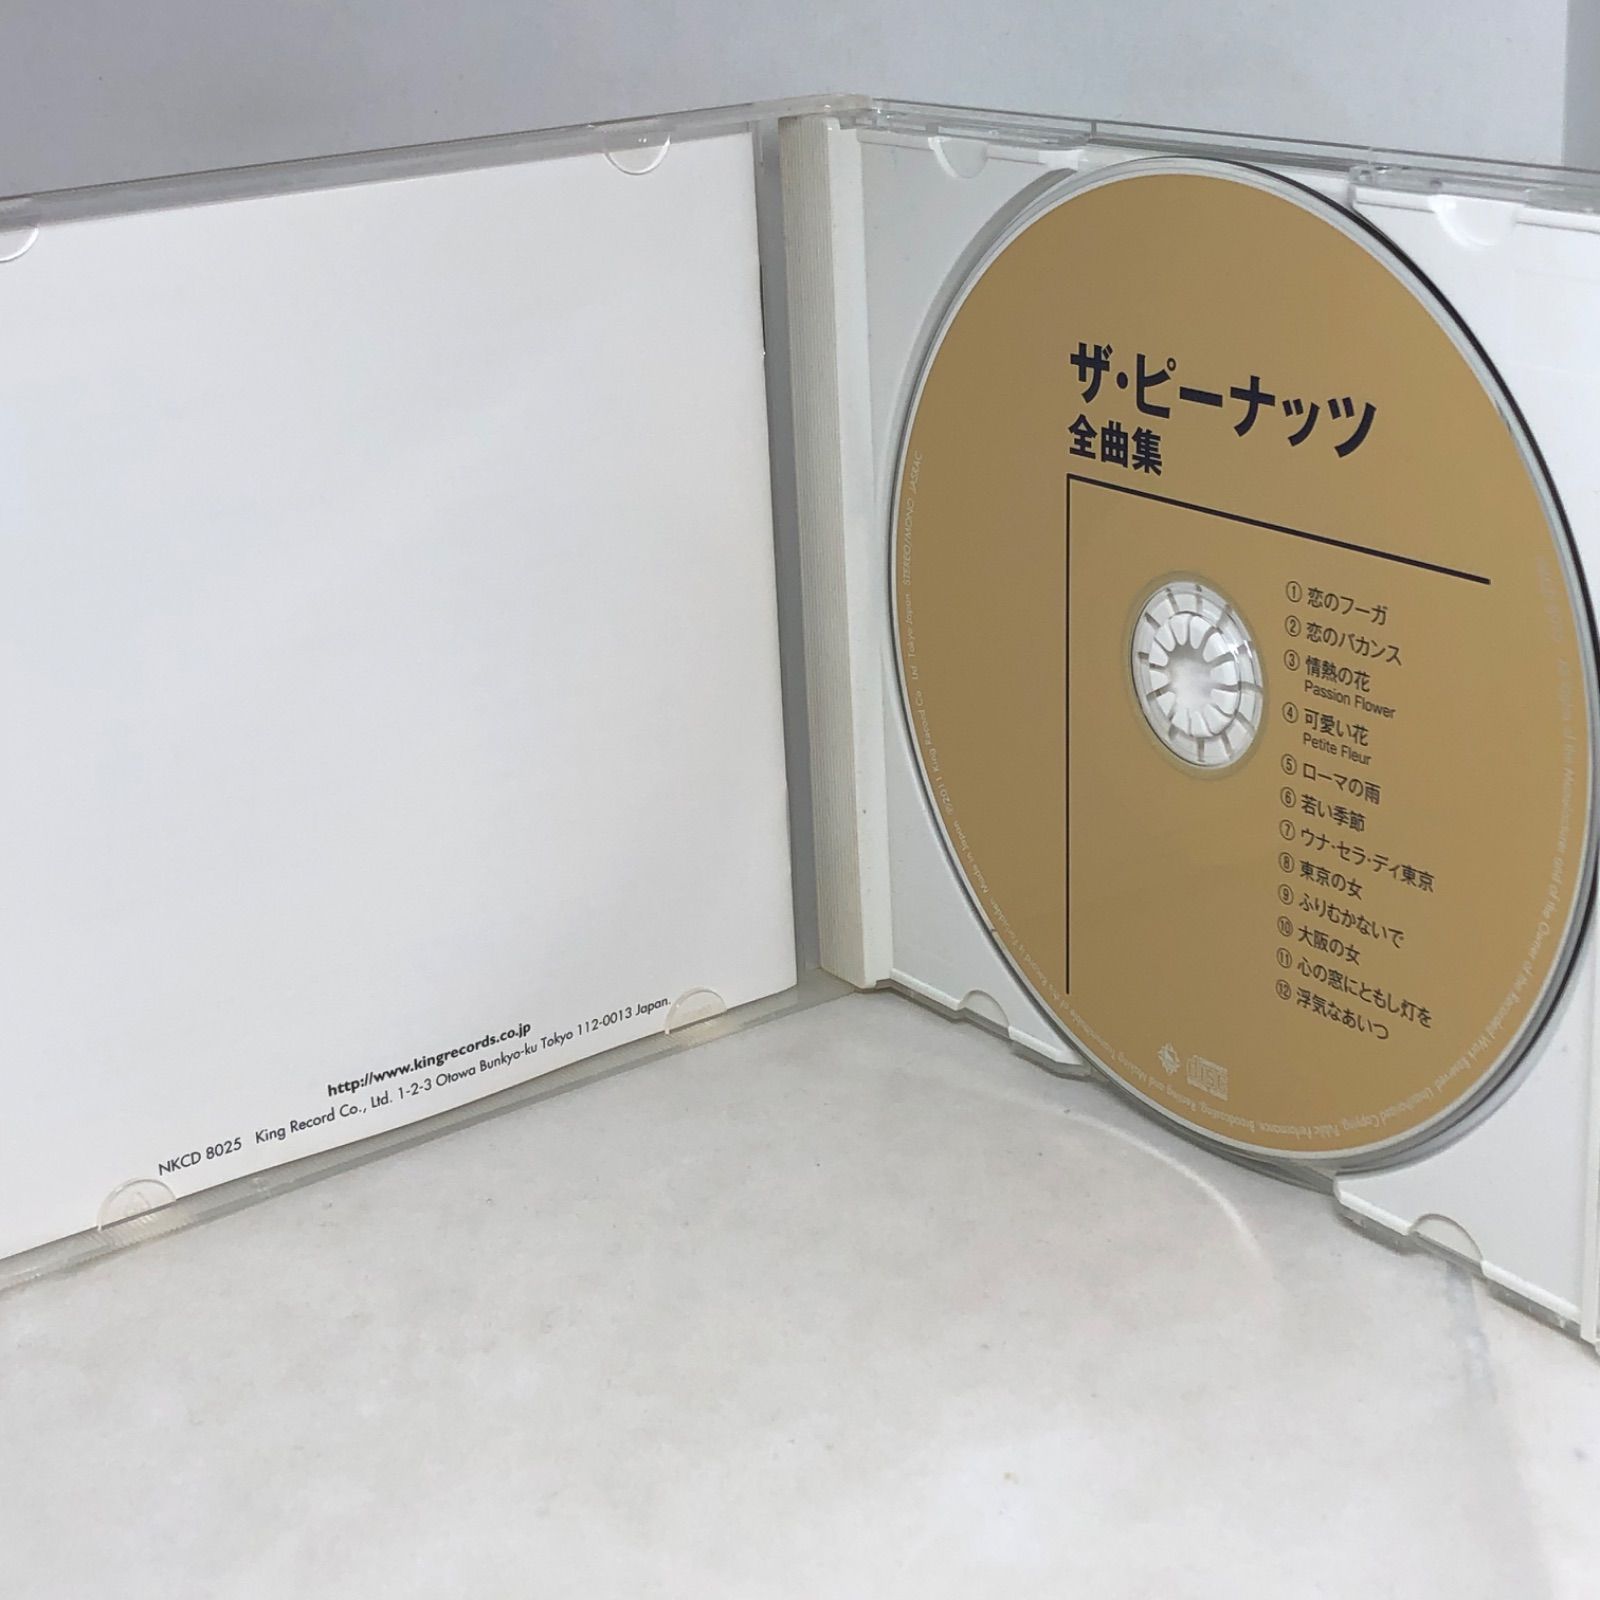 ザ・ピーナッツ/全曲集/ザ・ピーナッツ 全12曲 NKCD8025 - メルカリ